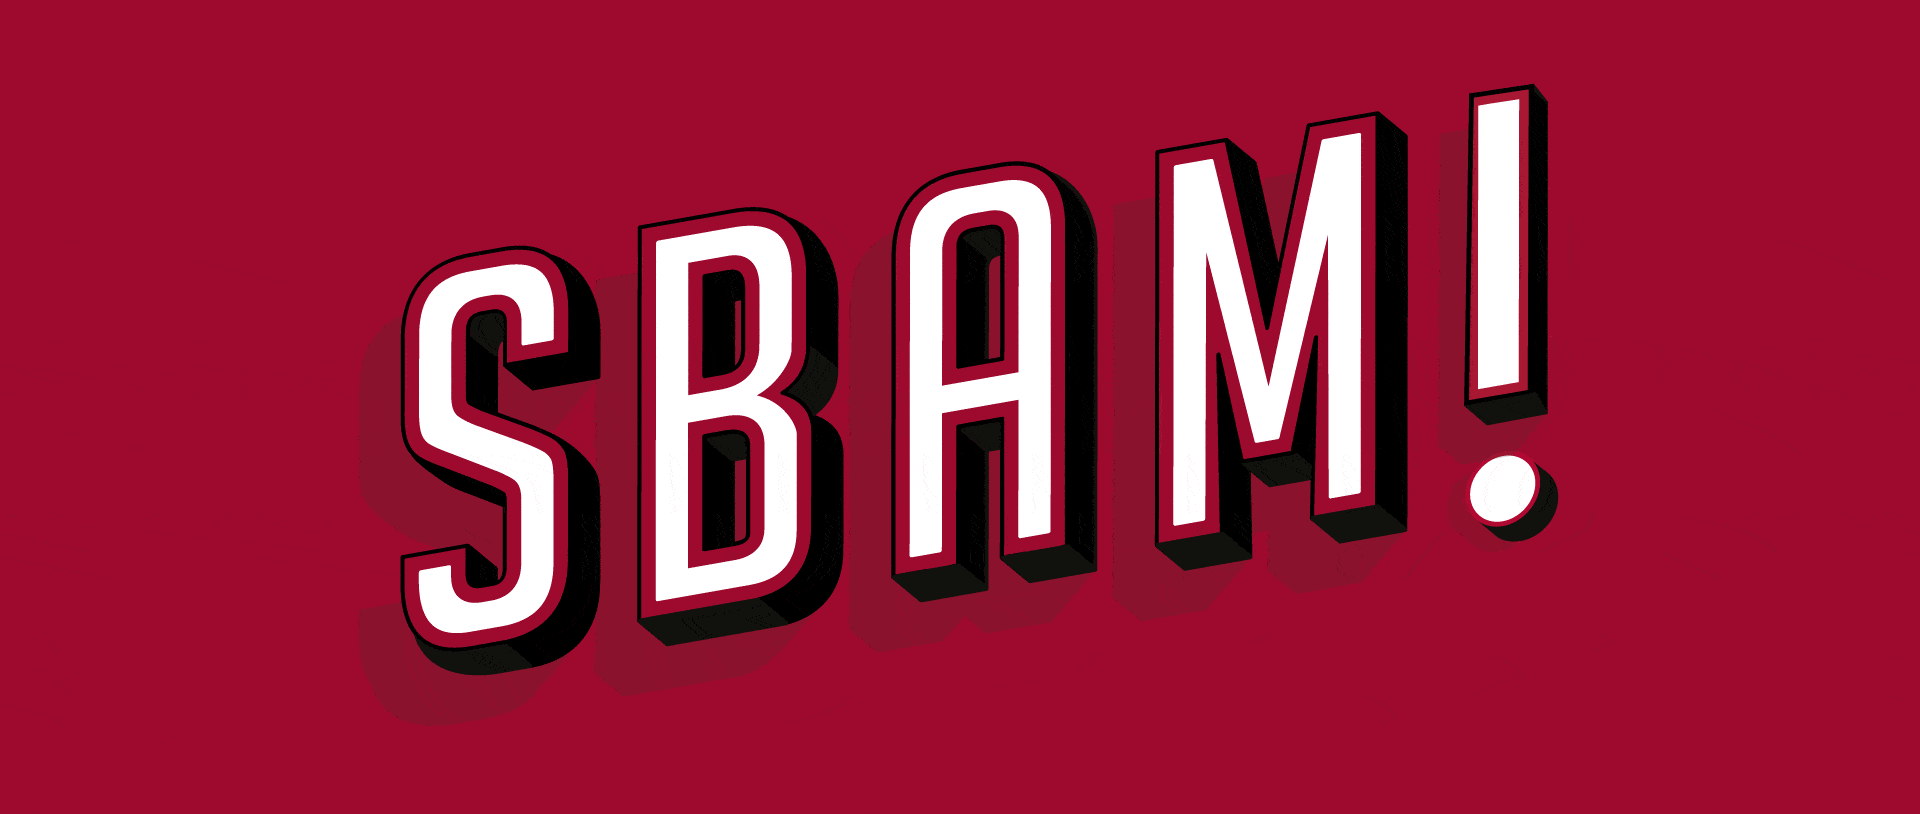 Sbam logo sito 1920x814 1